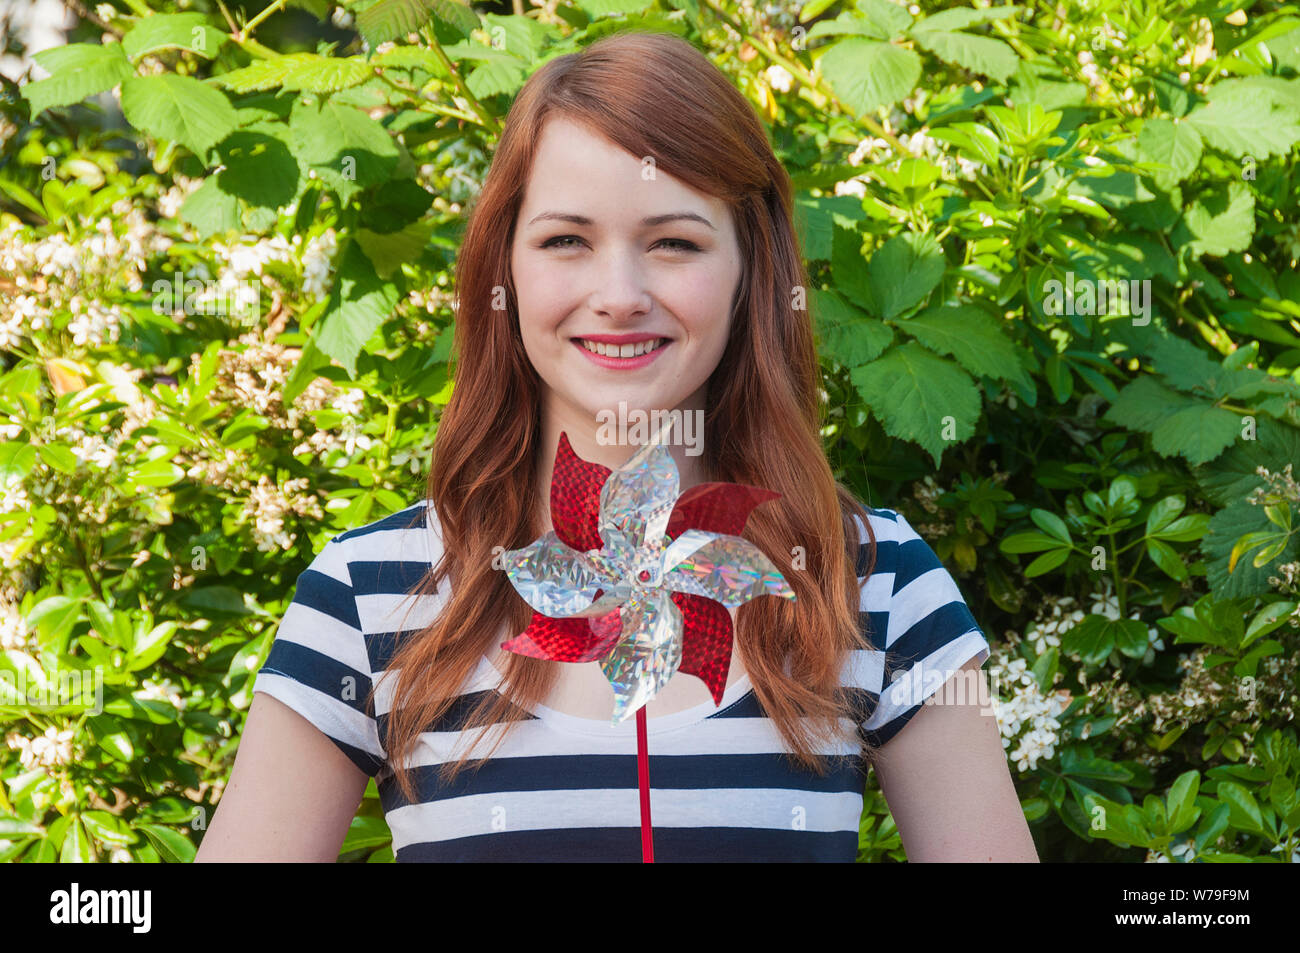 Una giovane donna con i capelli rossi tenendo una girandola. Foto Stock